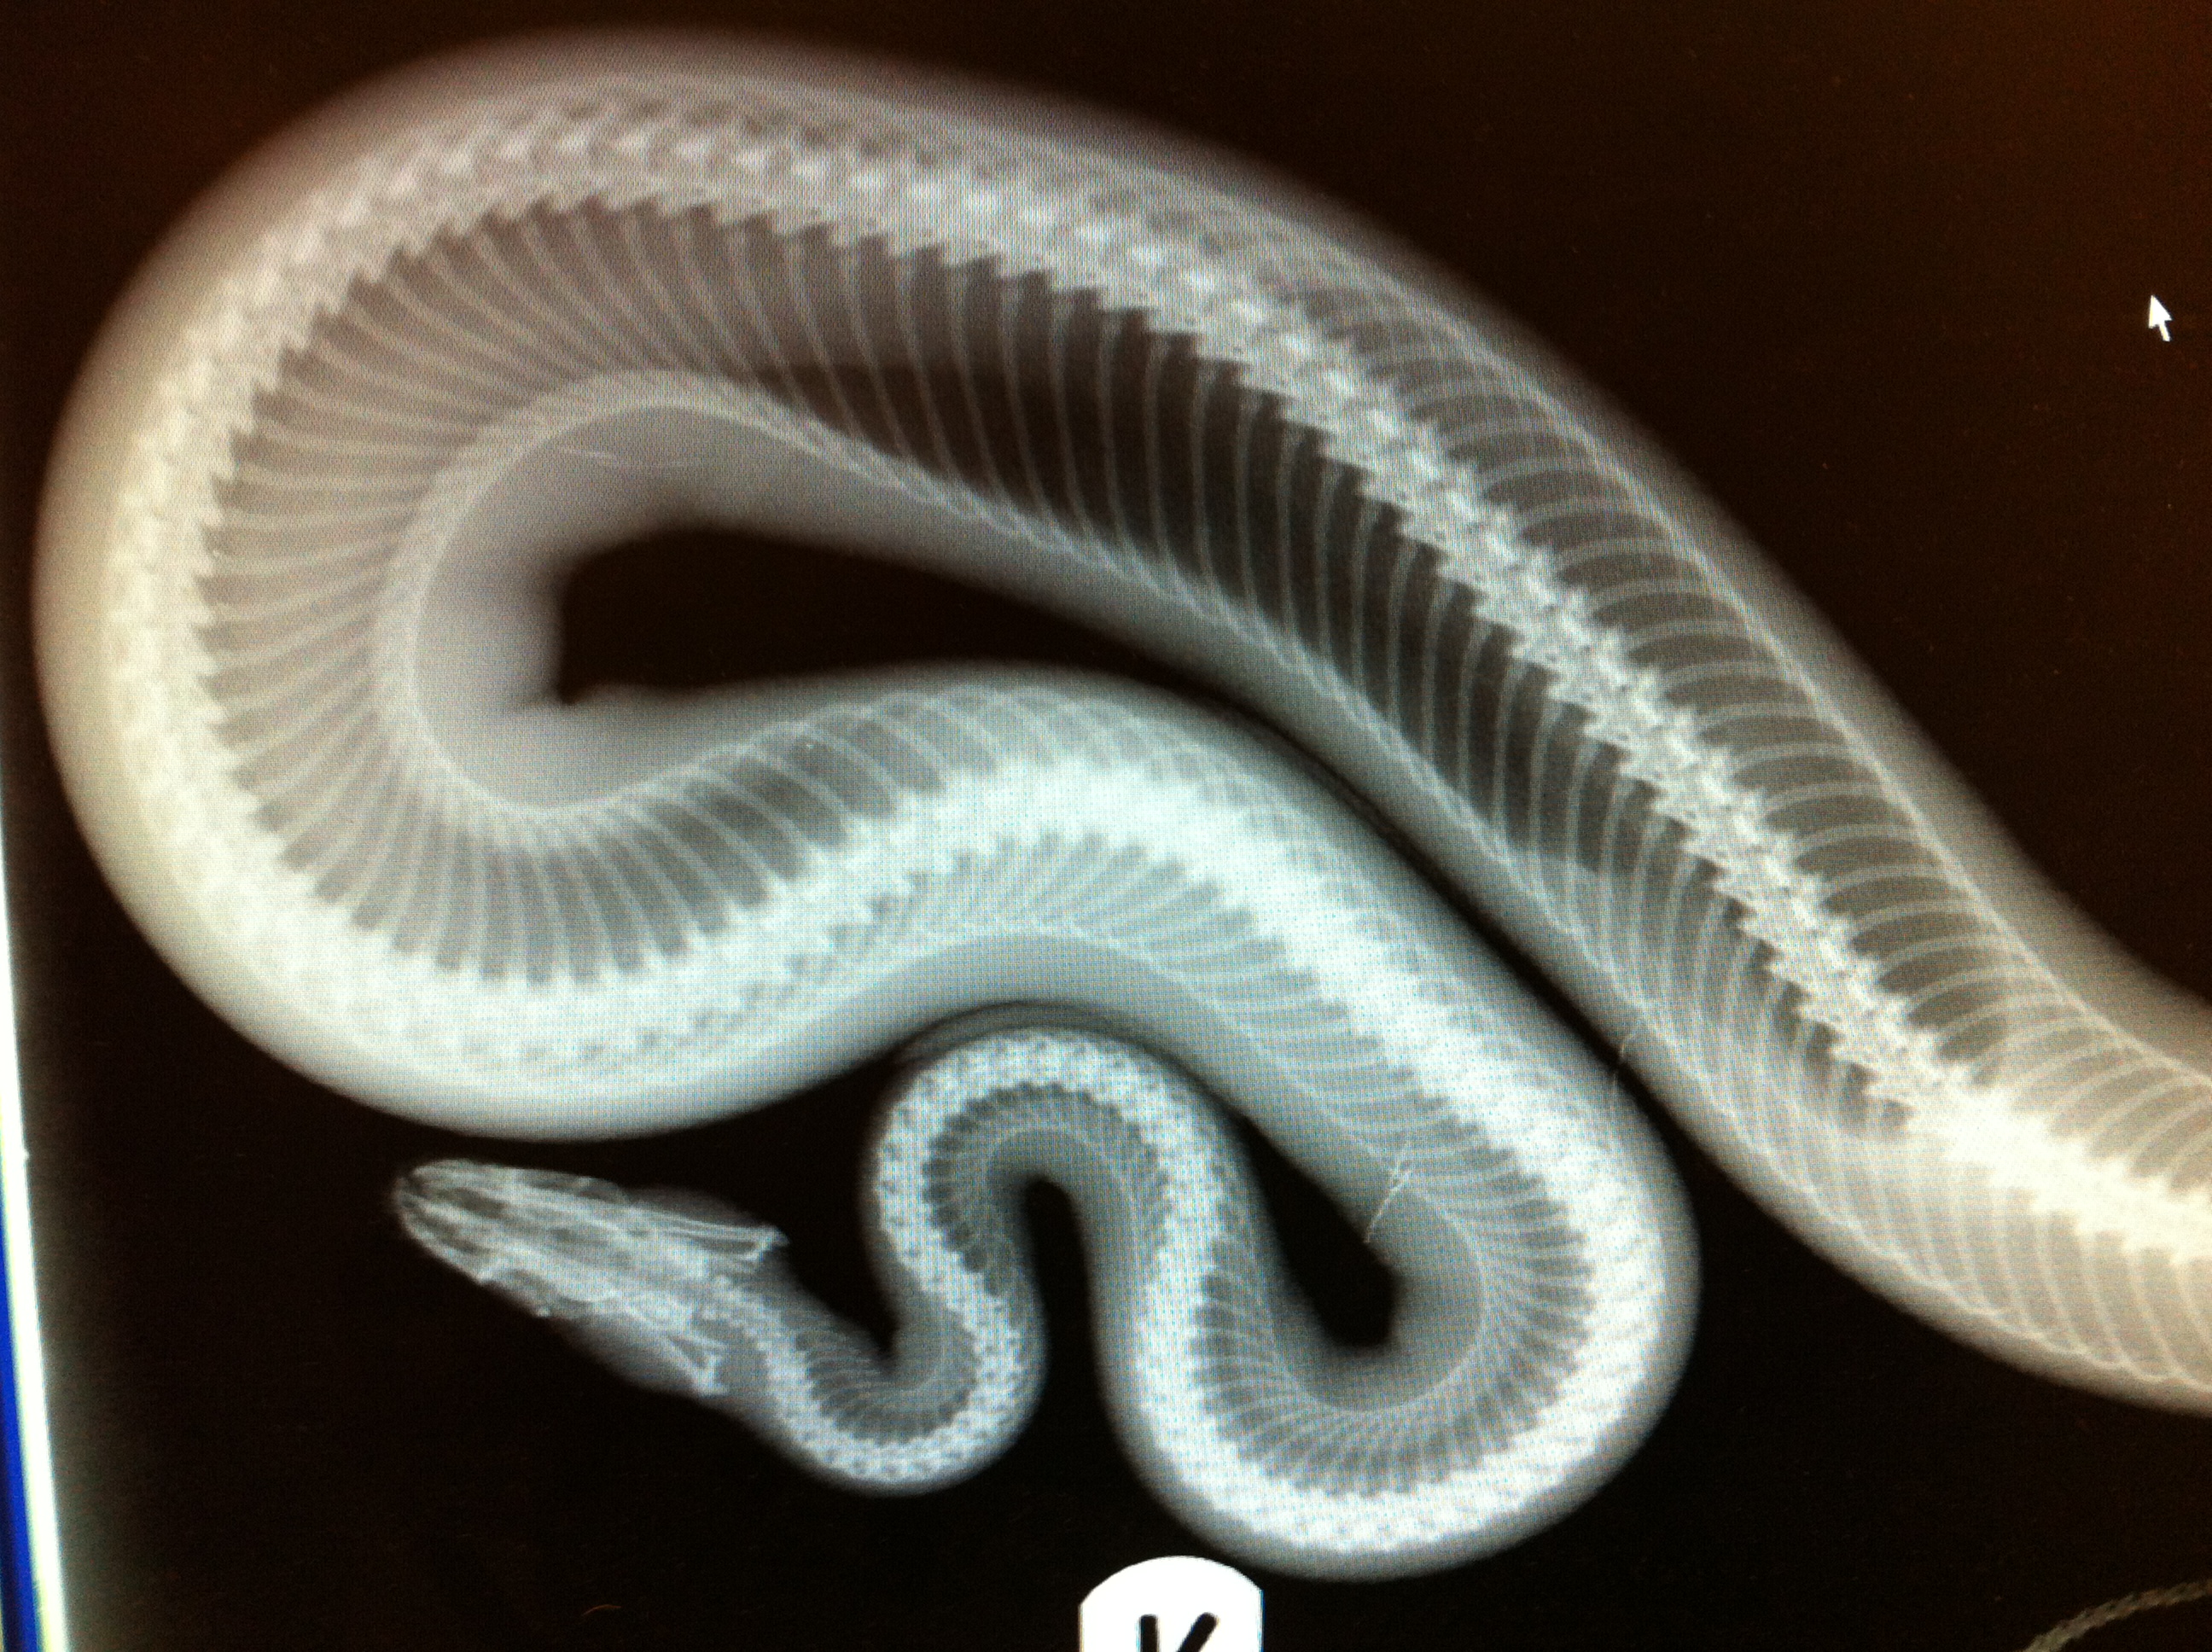 snakes | The Exotic Pet Vet Blog2592 x 1936